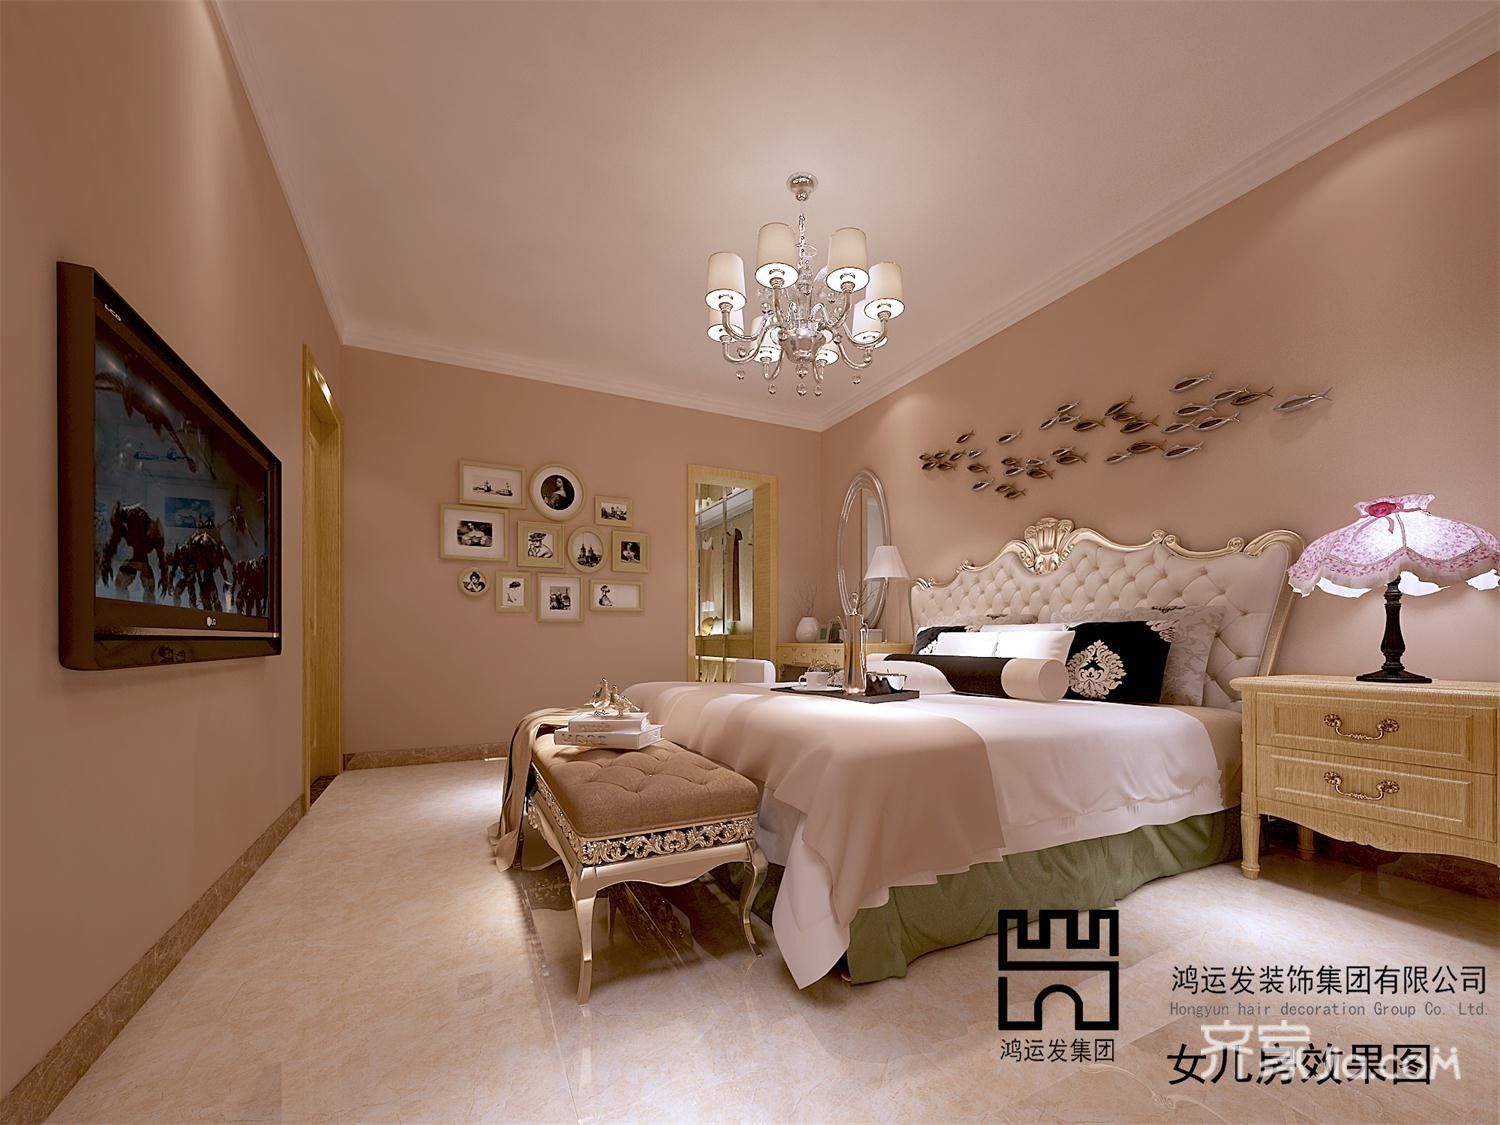 豪华型装修,大户型,140平米以上装修,卧室,简欧风格,卧室背景墙,暖色调